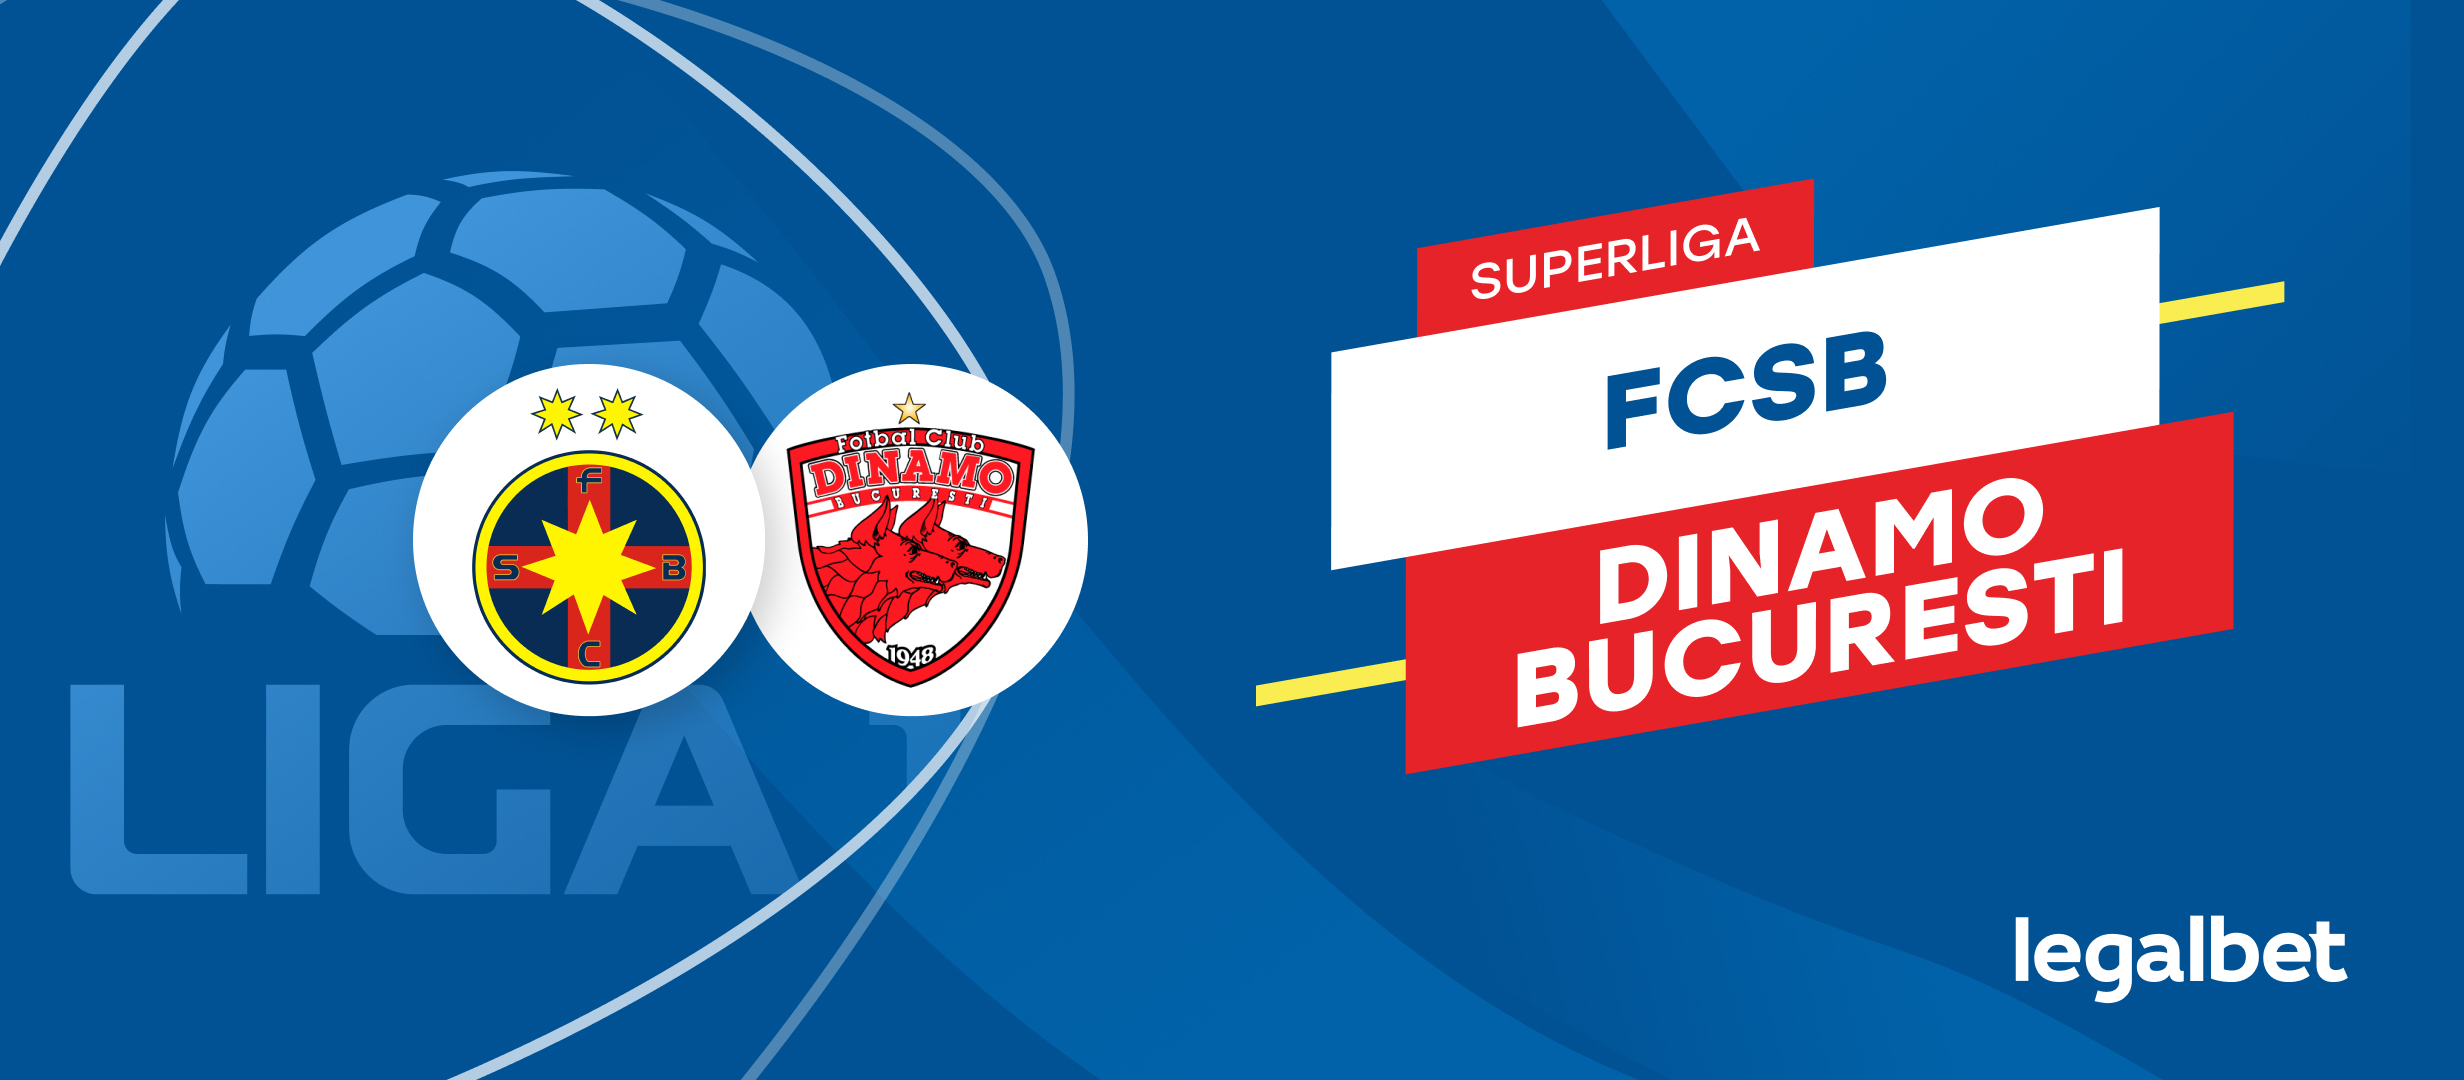 FCSB - Dinamo, ponturi la pariuri Superliga